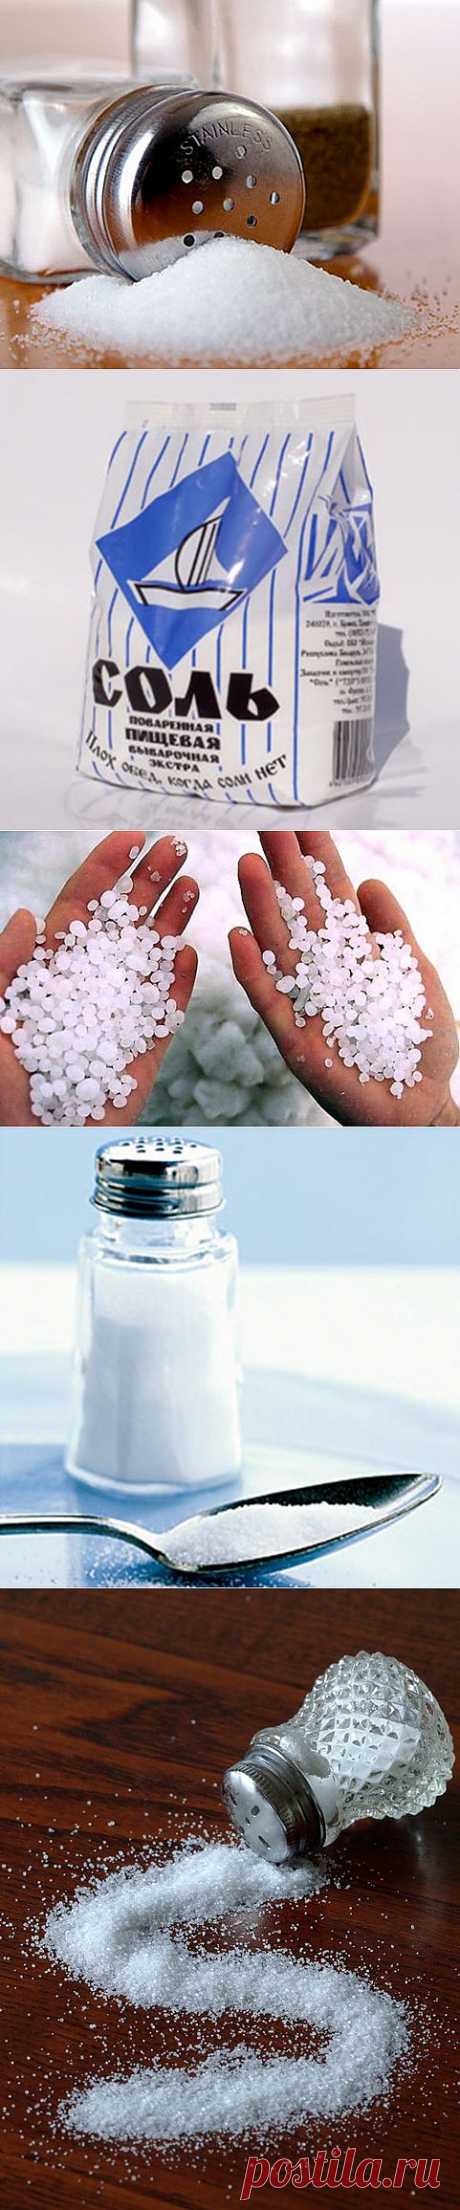 Двадцать способов применения поваренной соли | One of Lady - Журнал для женщин